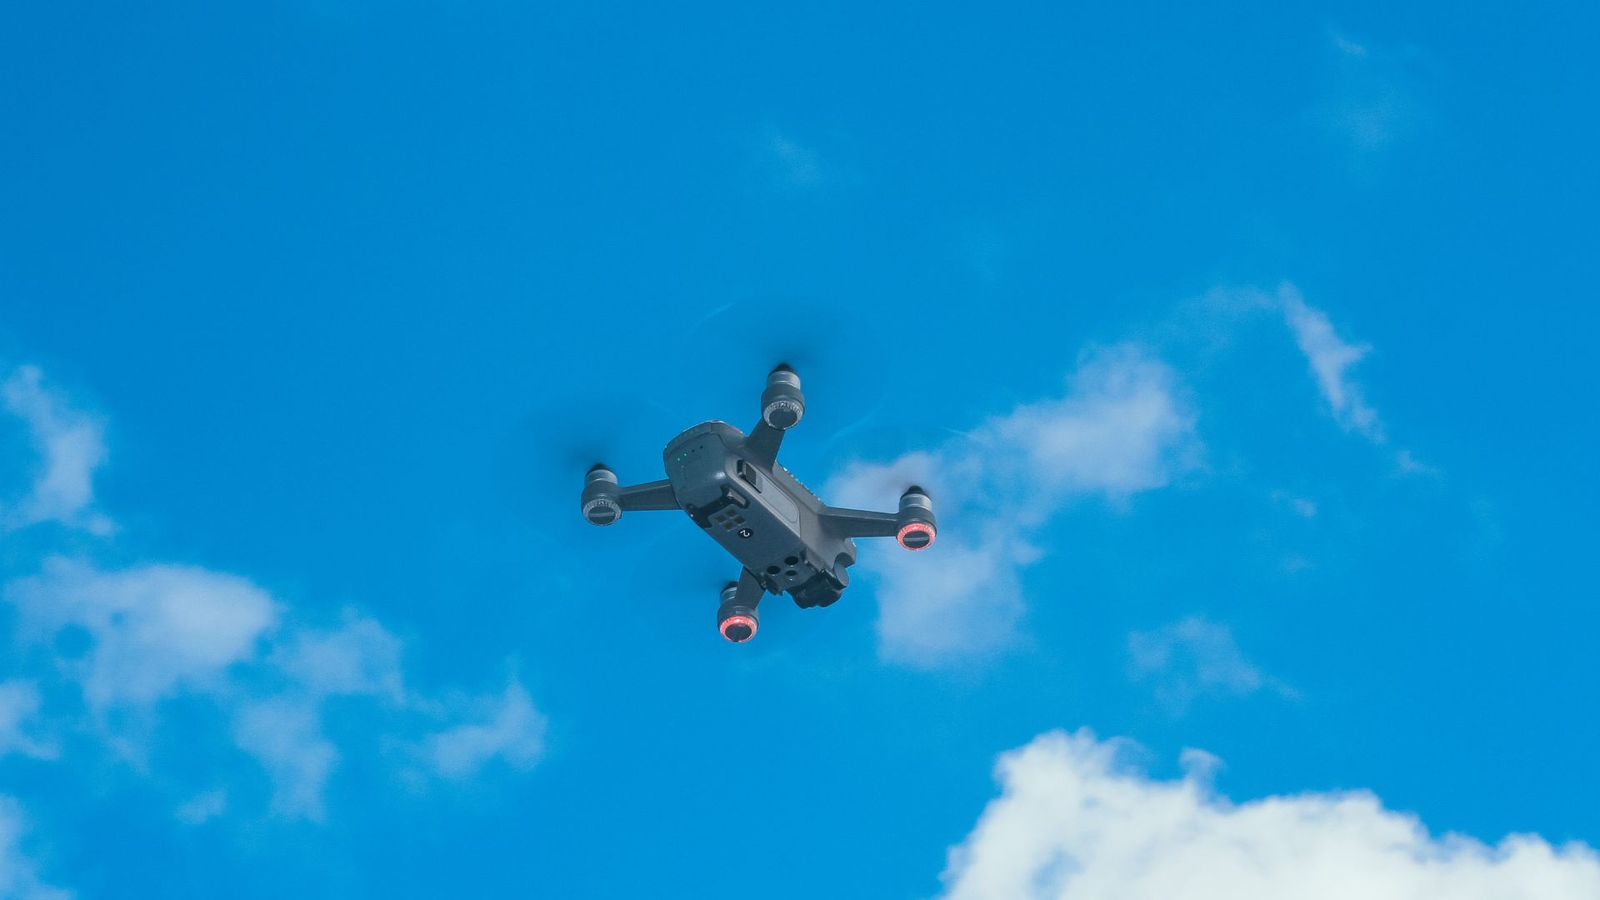 Drone in blue sky